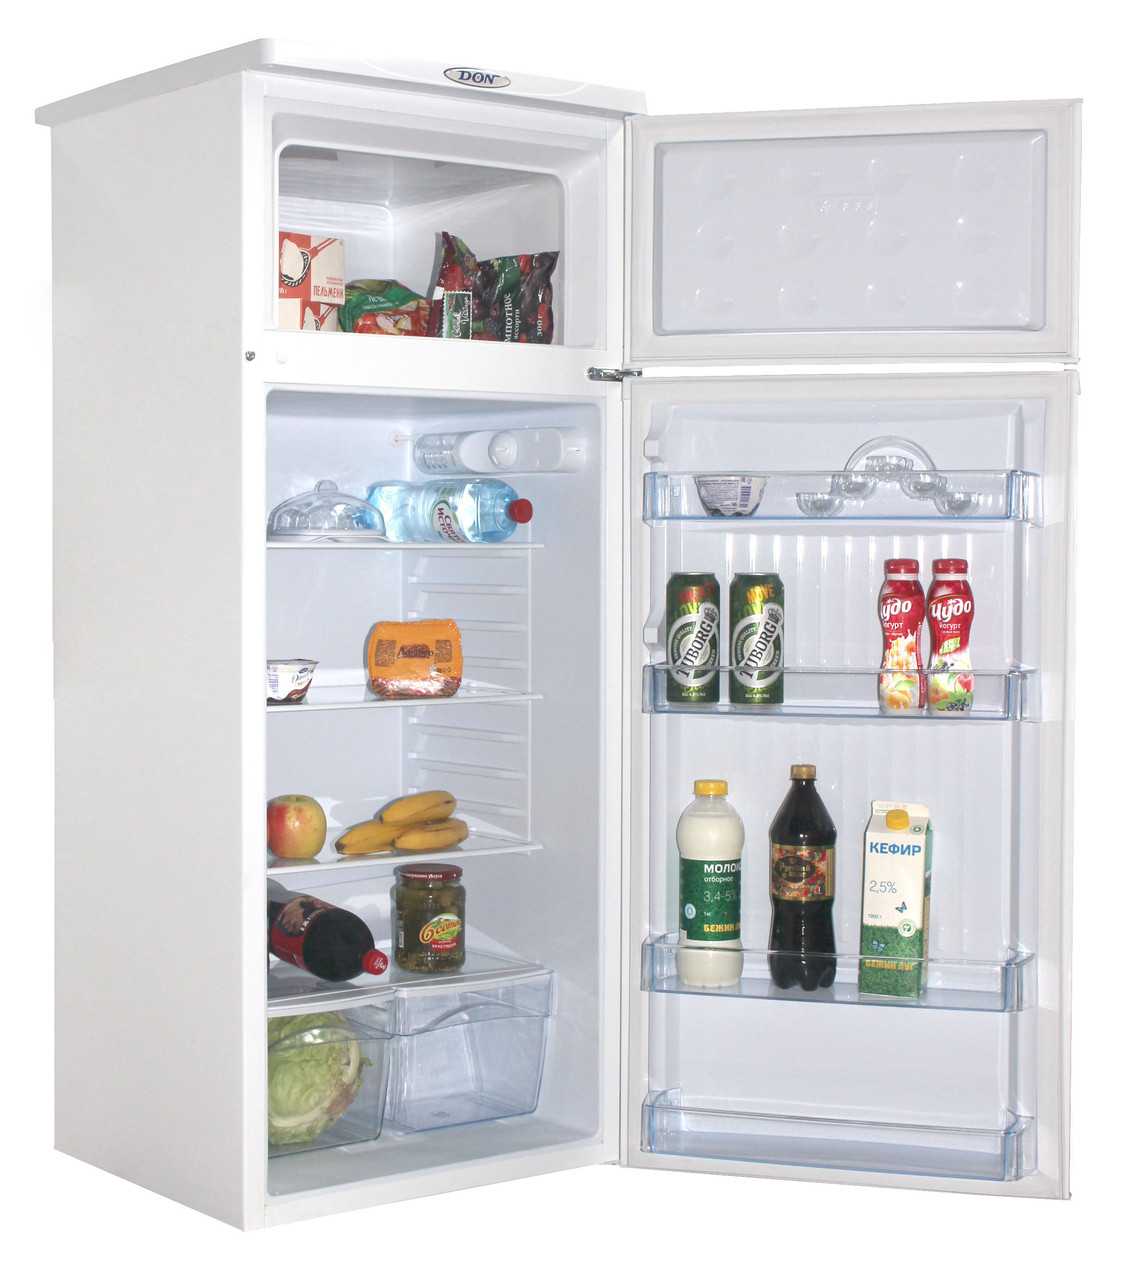 Лучшие холодильники по качеству и надежности - топ 35 моделей